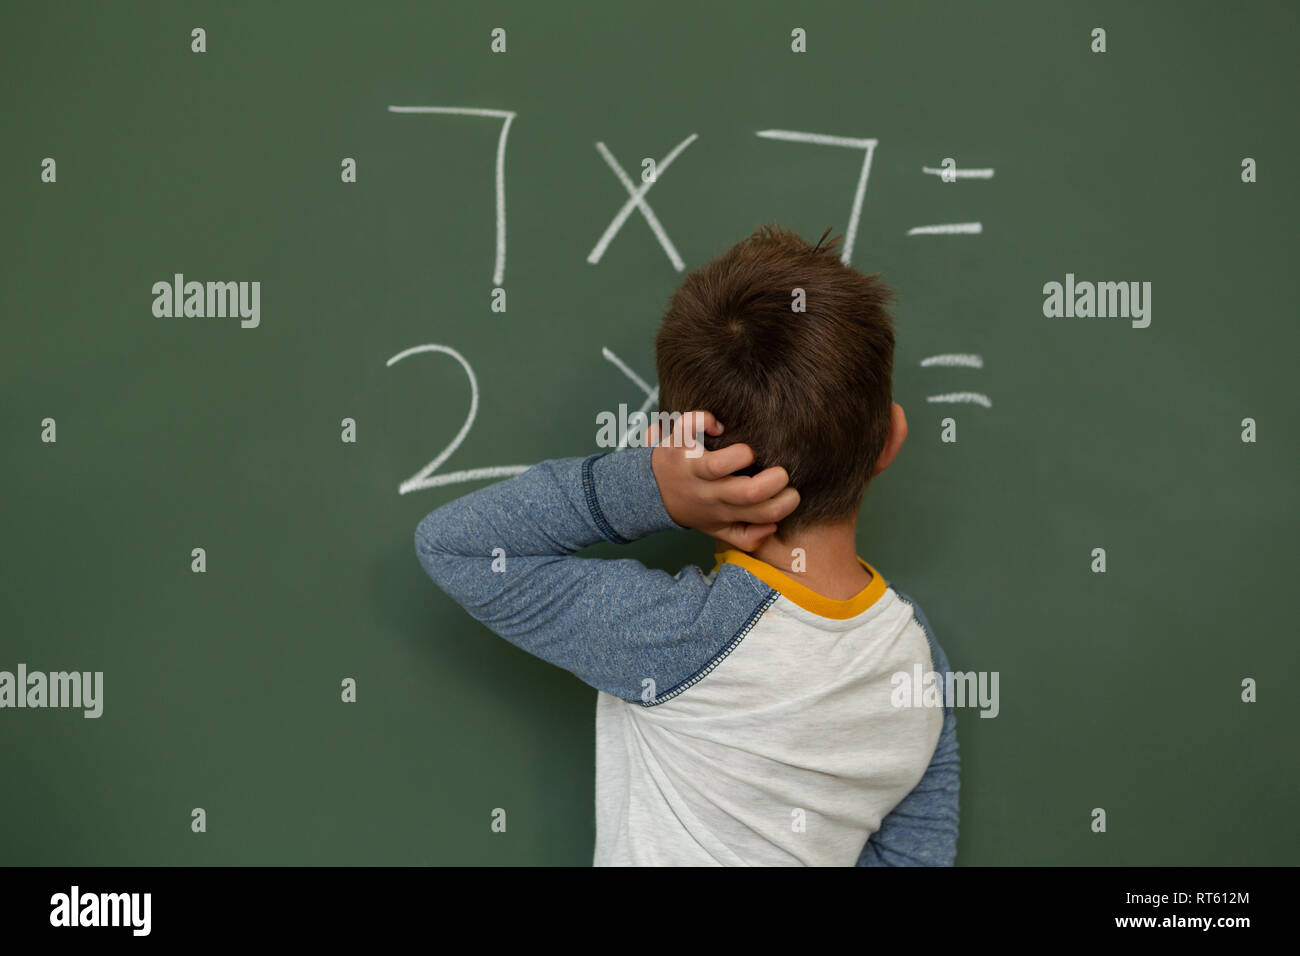 Faites des calculs d'écolier panneau greenboard sur dans une salle de classe Banque D'Images